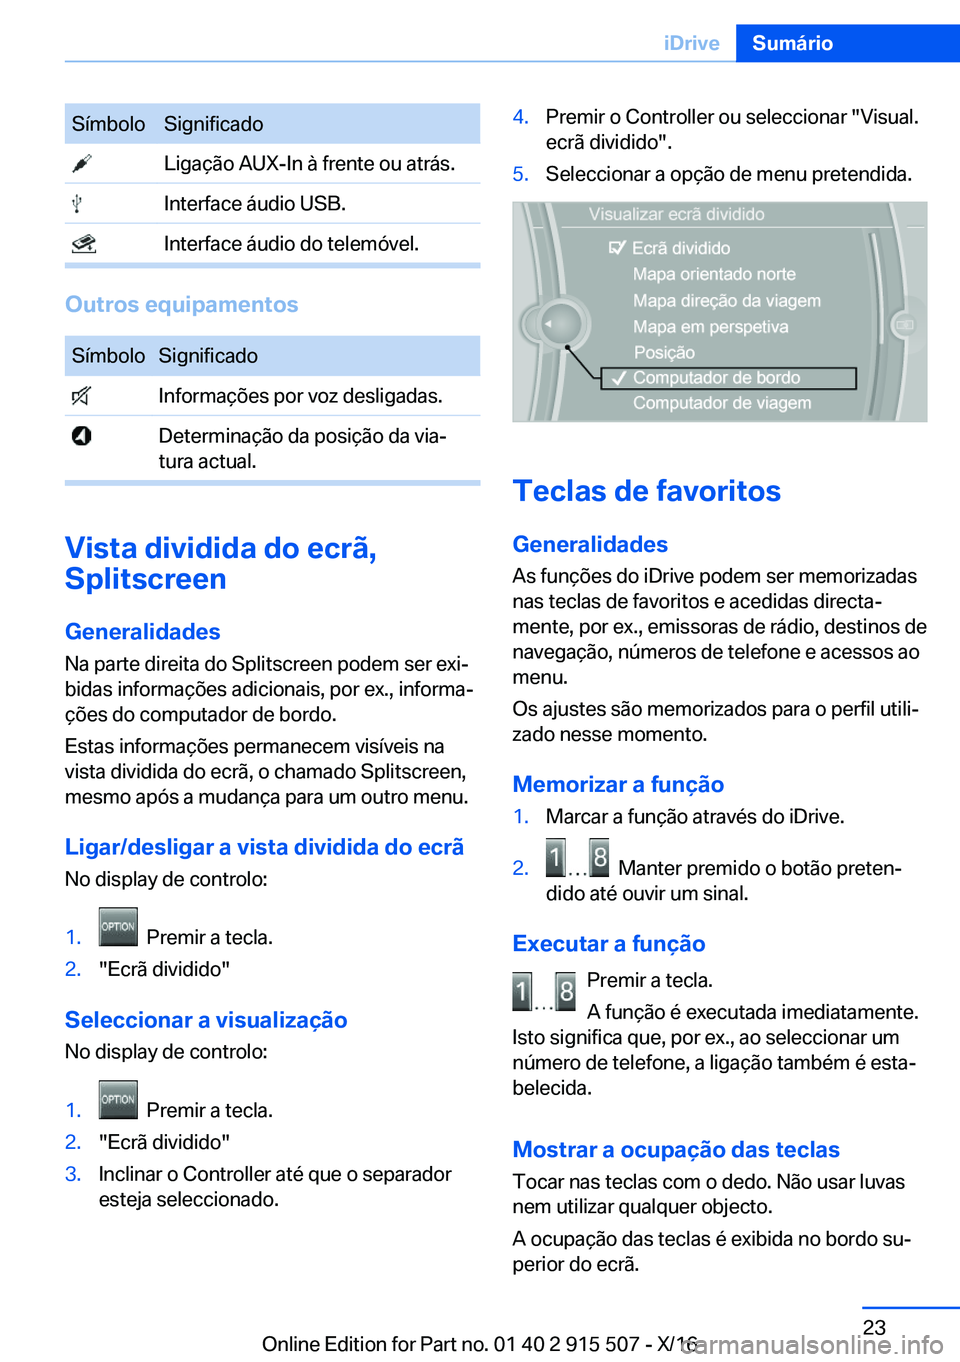 BMW X5 2017  Manual do condutor (in Portuguese) �S�í�m�b�o�l�o�S�i�g�n�i�f�i�c�a�d�o� �L�i�g�a�ç�ã�o� �A�U�X�-�I�n� �à� �f�r�e�n�t�e� �o�u� �a�t�r�á�s�.� �I�n�t�e�r�f�a�c�e� �á�u�d�i�o� �U�S�B�.� �I�n�t�e�r�f�a�c�e� �á�u�d�i�o� �d�o� �t�e�l�